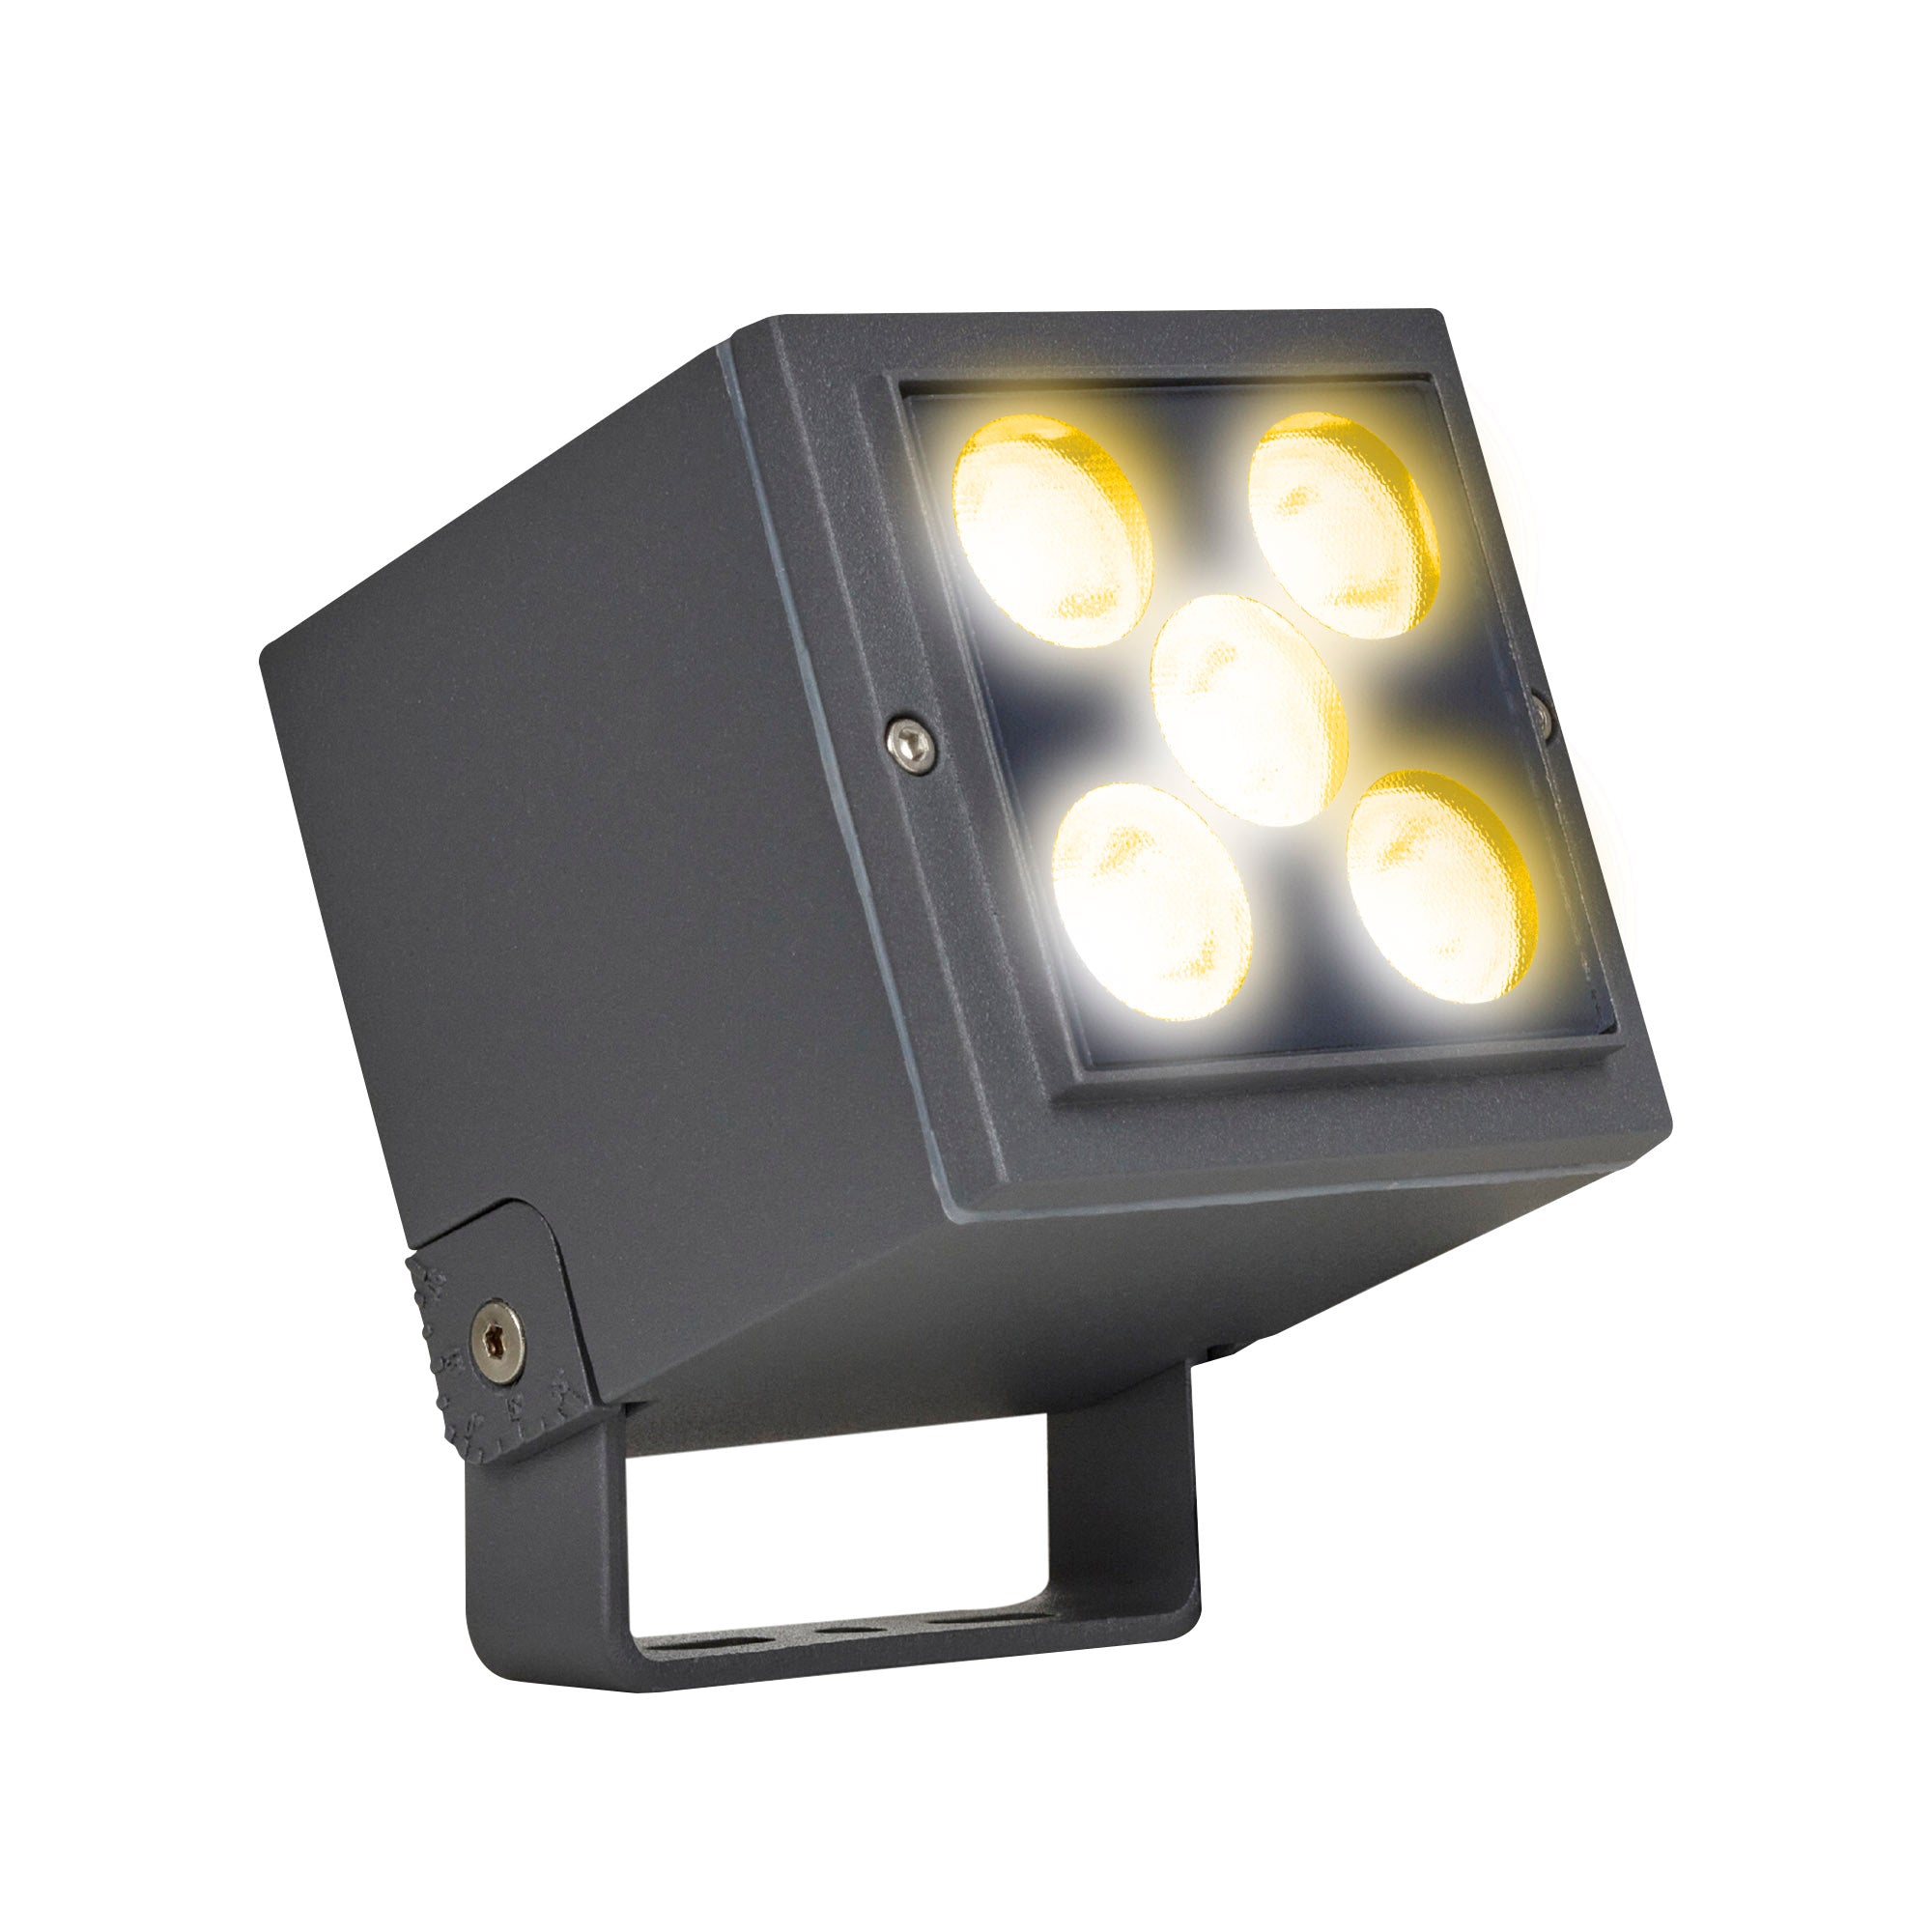 Luminaria LED REFLECTOR para Piso Modelo PL-7704 The Collection